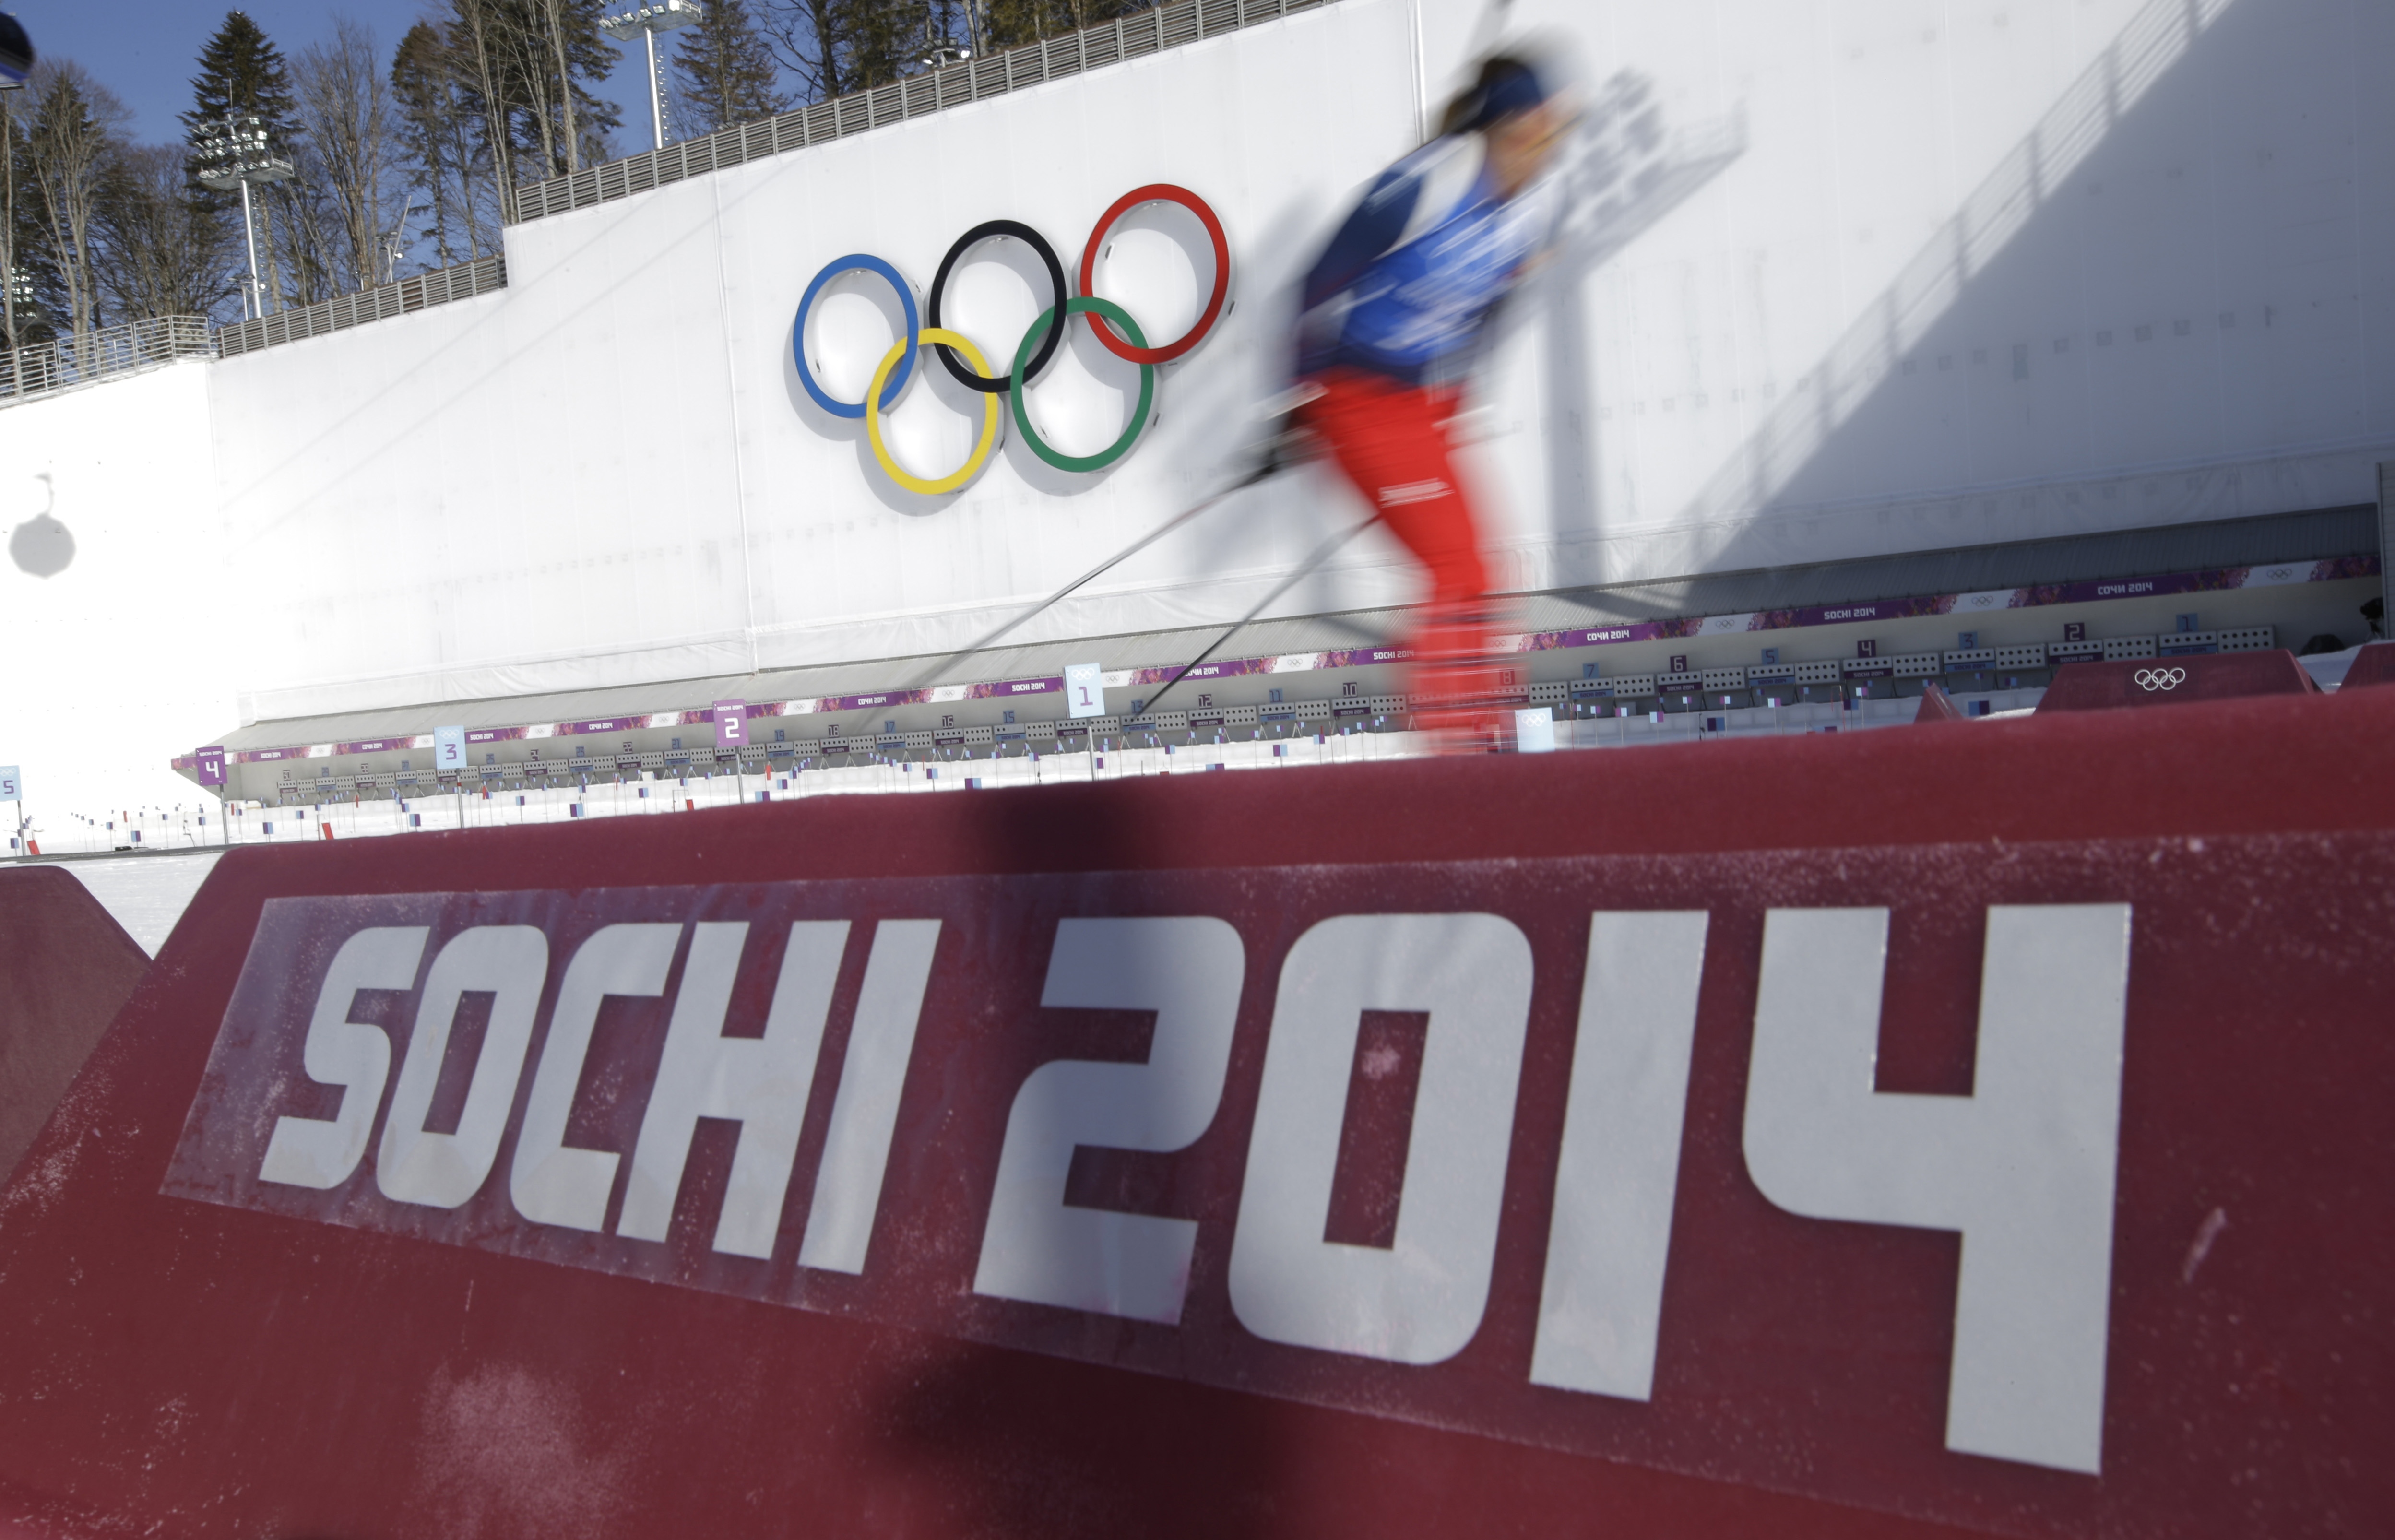 Σότσι: Εντυπωσιακή η τελετή έναρξης των Χειμερινών Ολυμπιακών Αγώνων